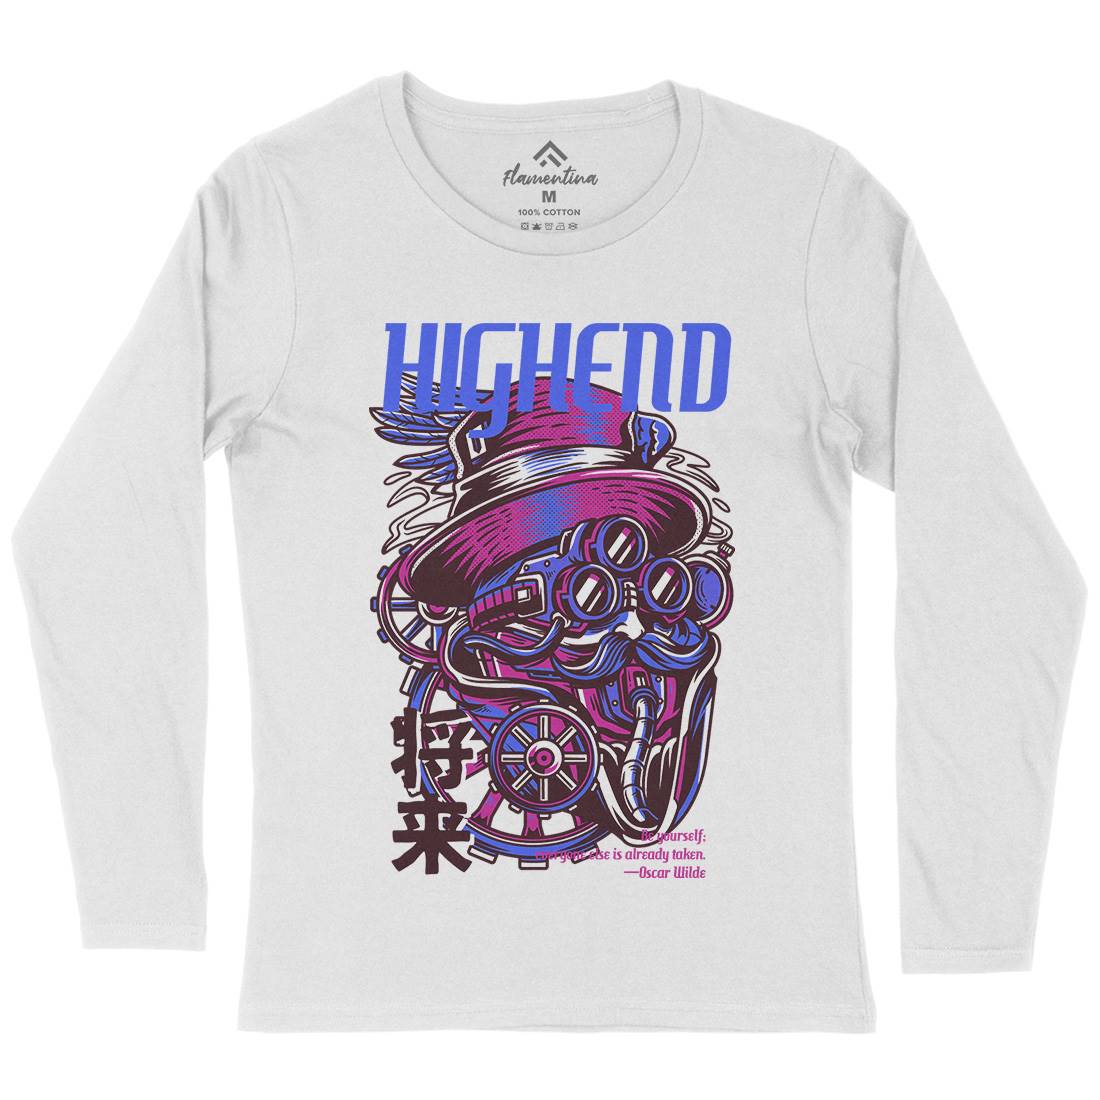 High End Womens Long Sleeve T-Shirt Steampunk D610